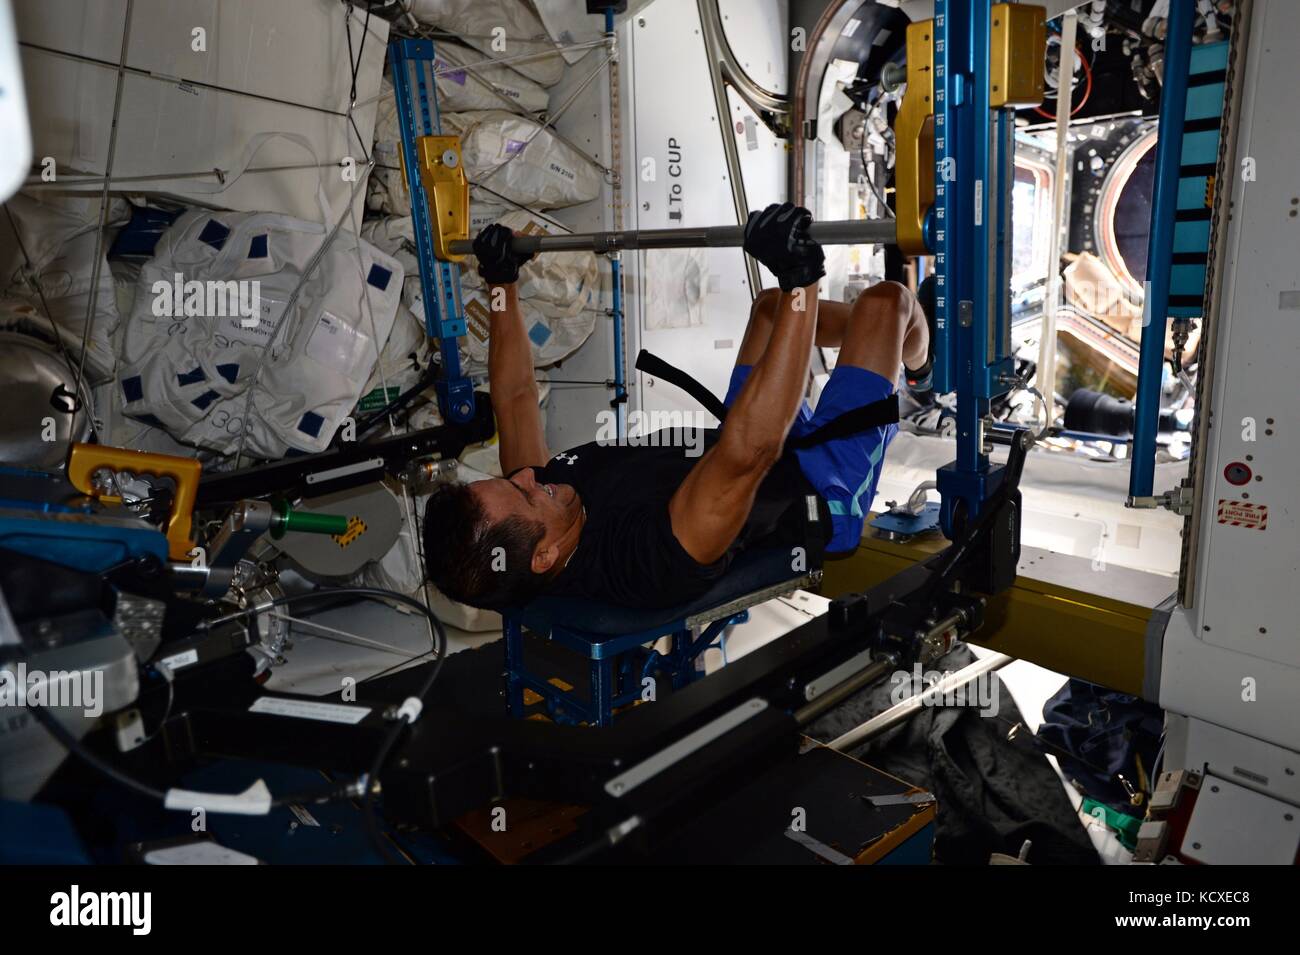 Expedition 53 astronauta americano Joe acaba durante il peso della formazione a bordo della Stazione spaziale internazionale il 29 settembre 2017 in orbita intorno alla terra. Foto Stock